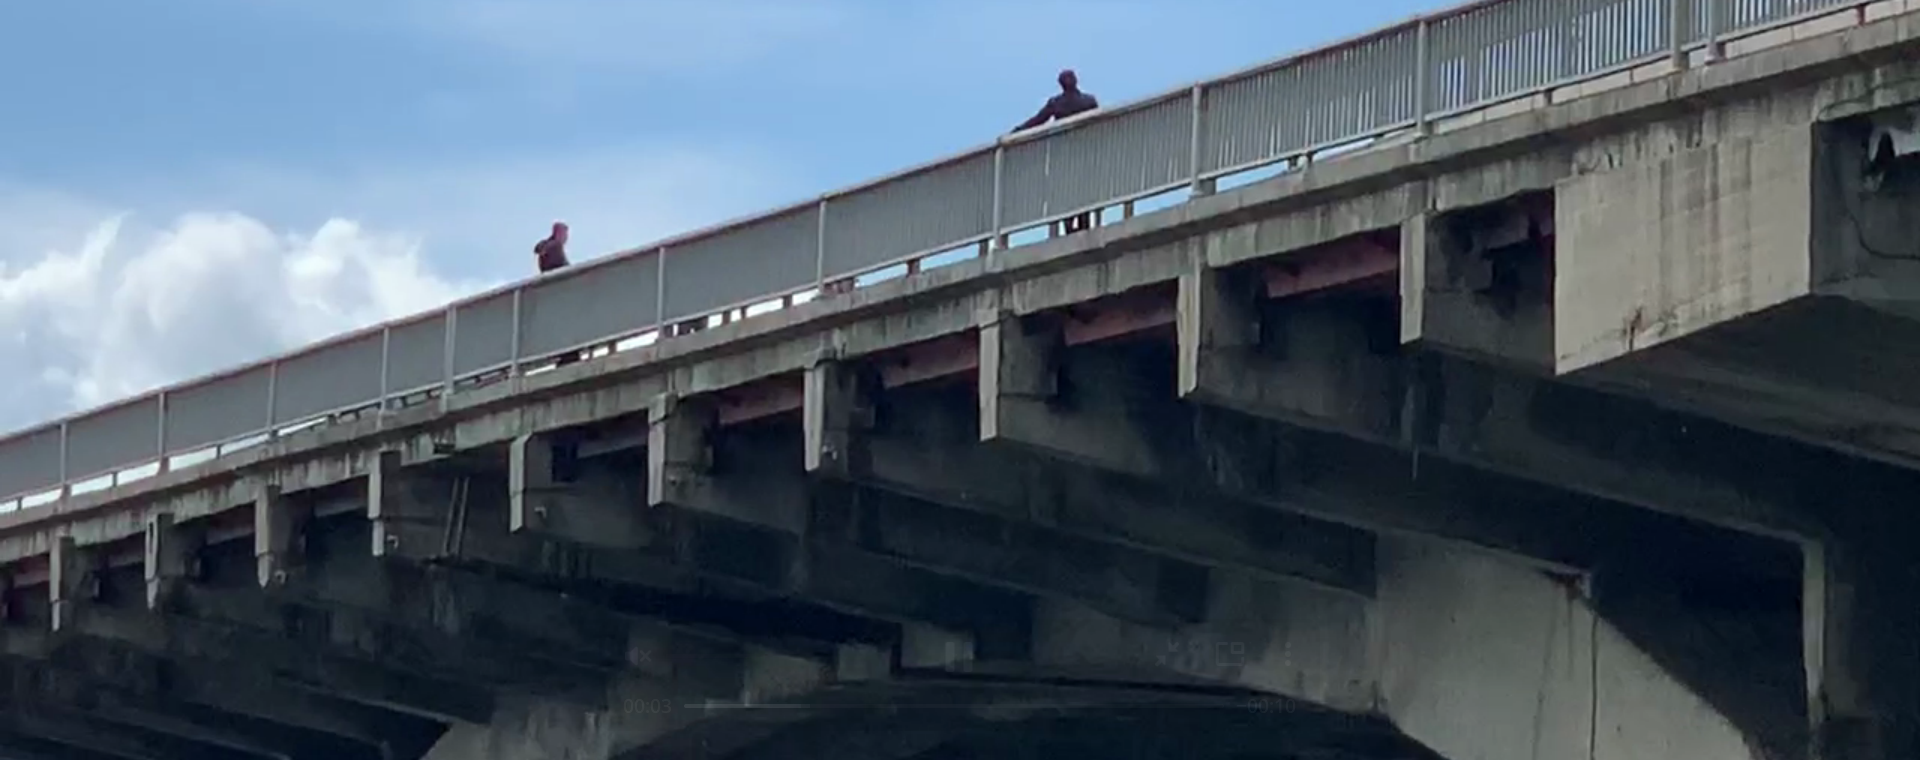 Минирование моста в центре Киева: появились фото минера с предположительно газовым баллоном